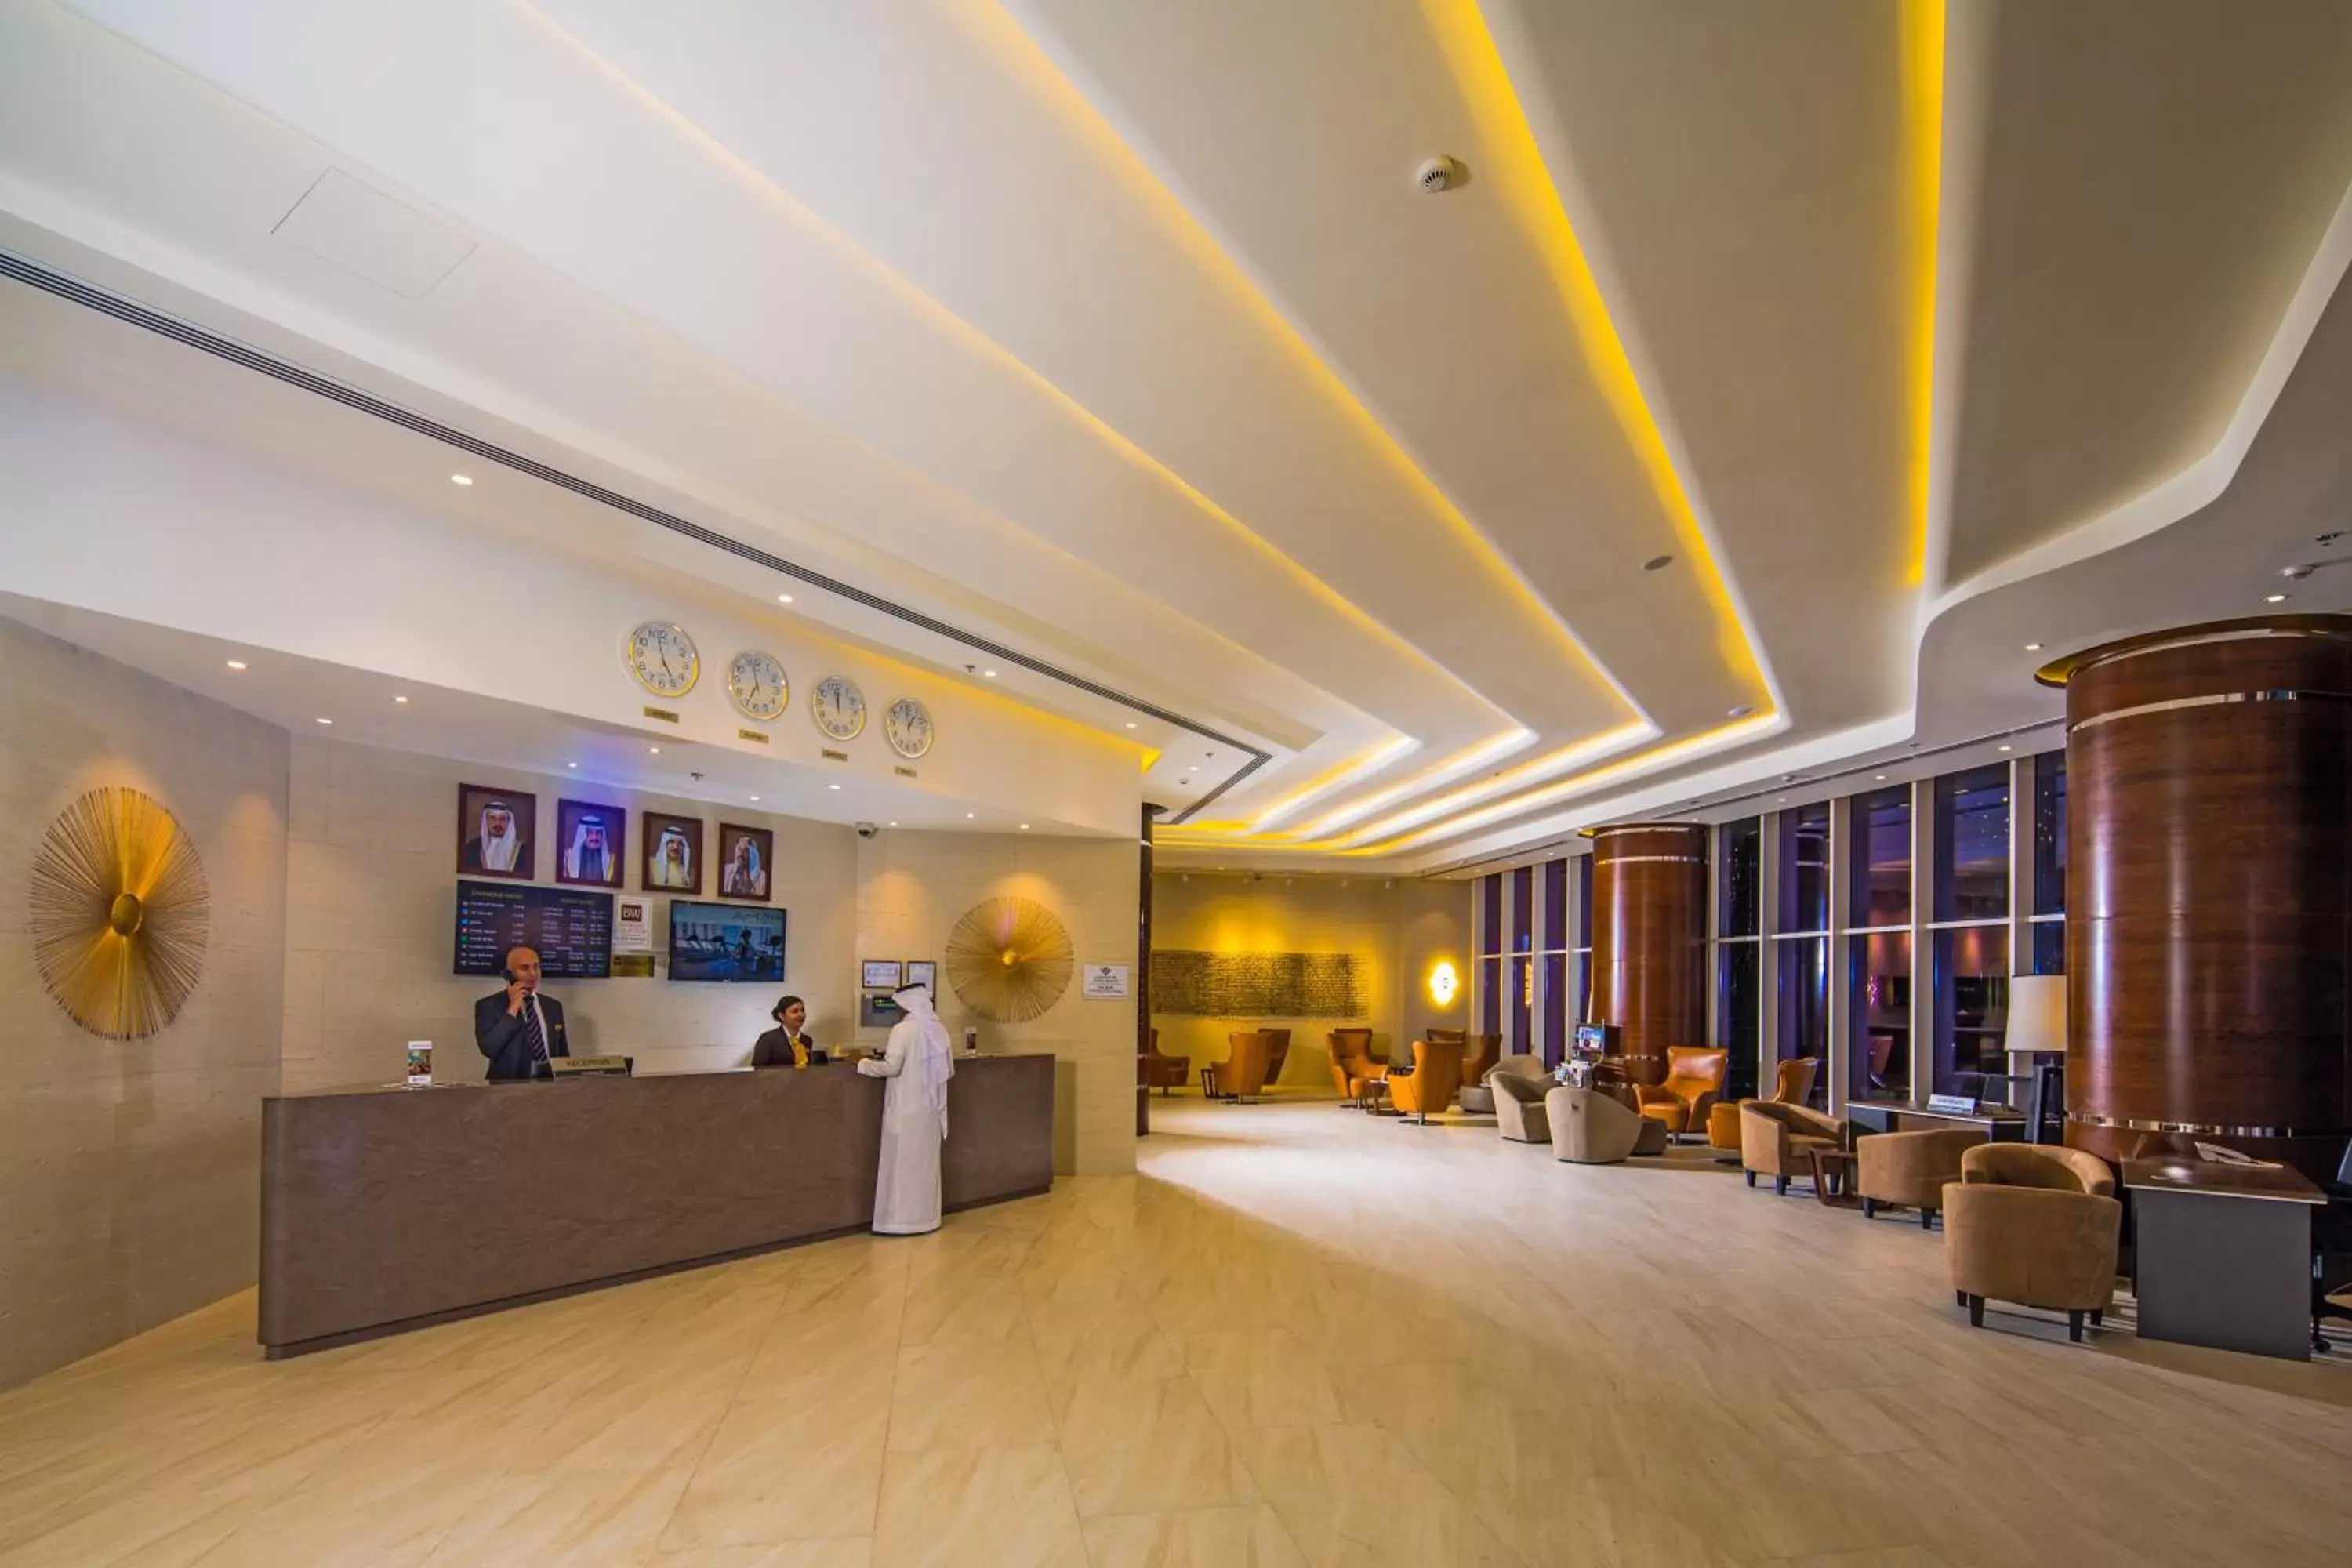 Lobby or reception, Lobby/Reception in Arch Hotel